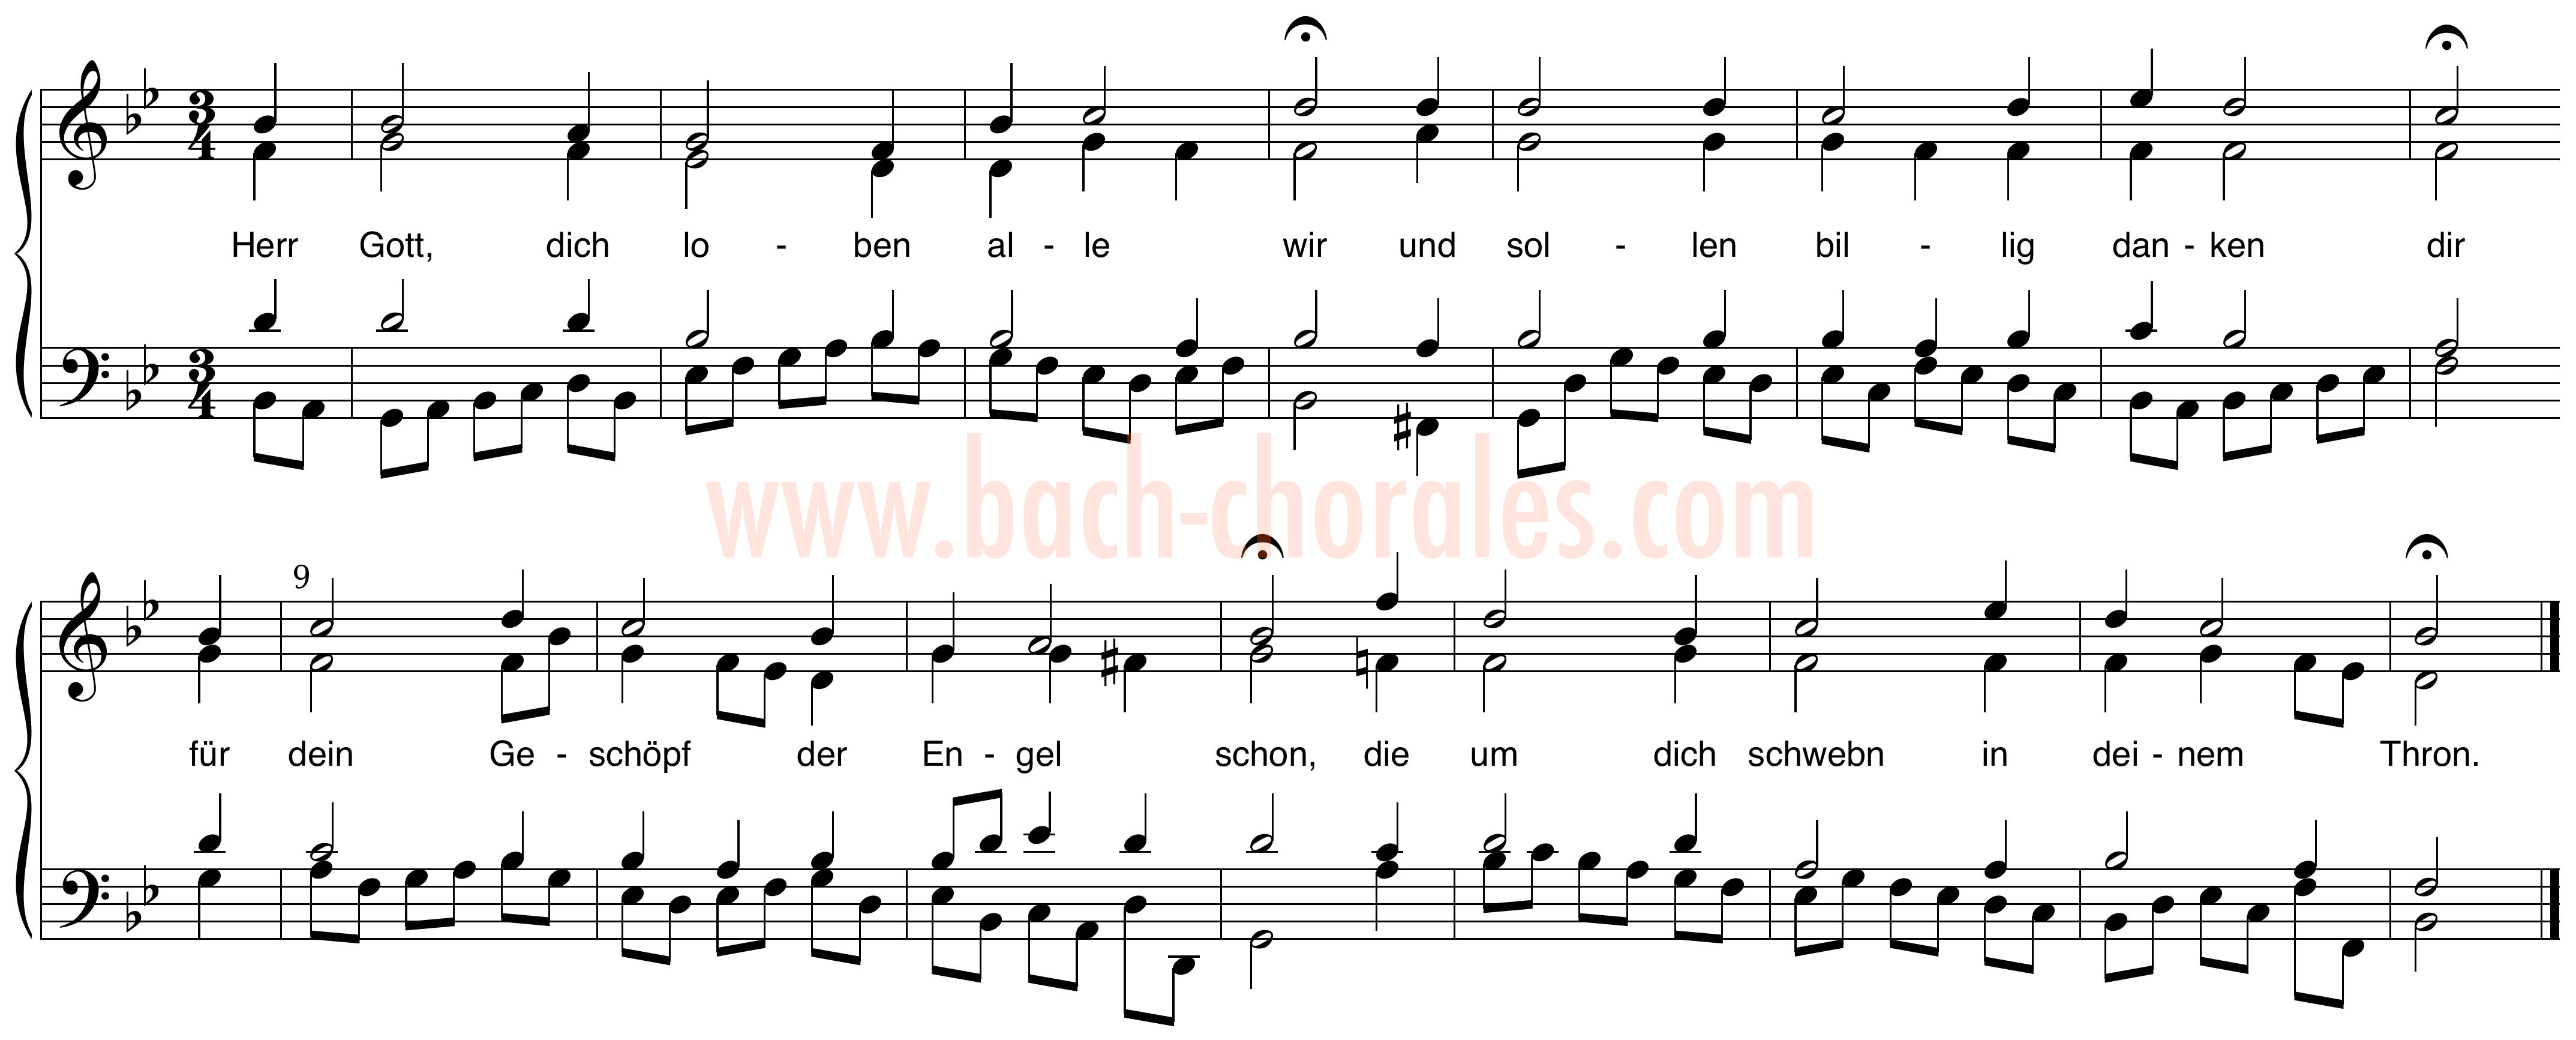 notenbeeld BWV 326 op https://www.bach-chorales.com/